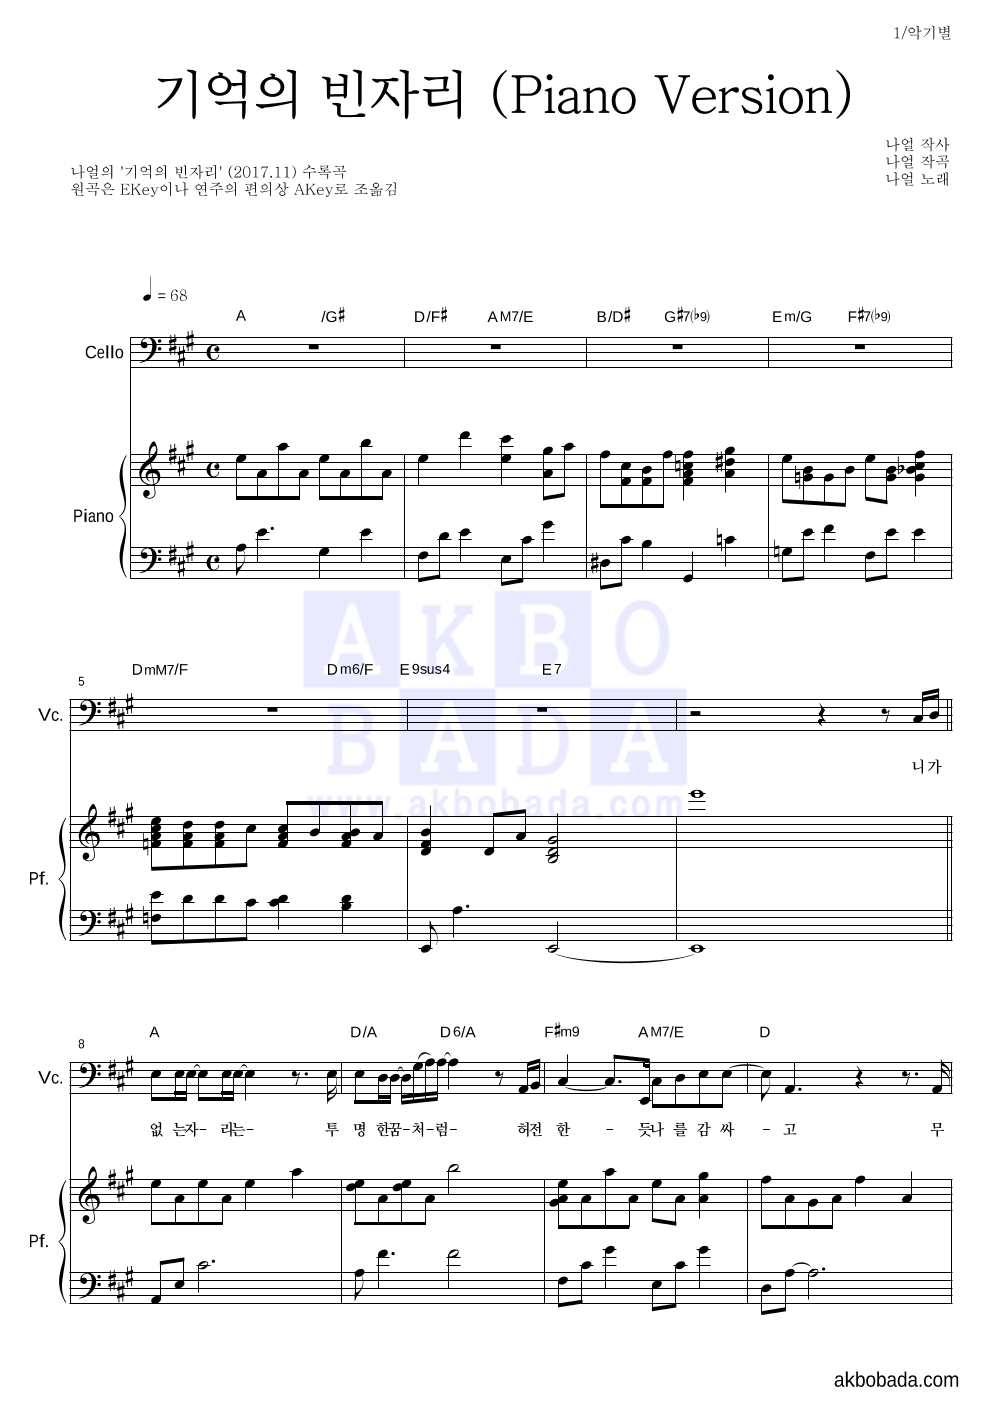 나얼 - 기억의 빈자리 (Piano Version) 첼로&피아노 악보 